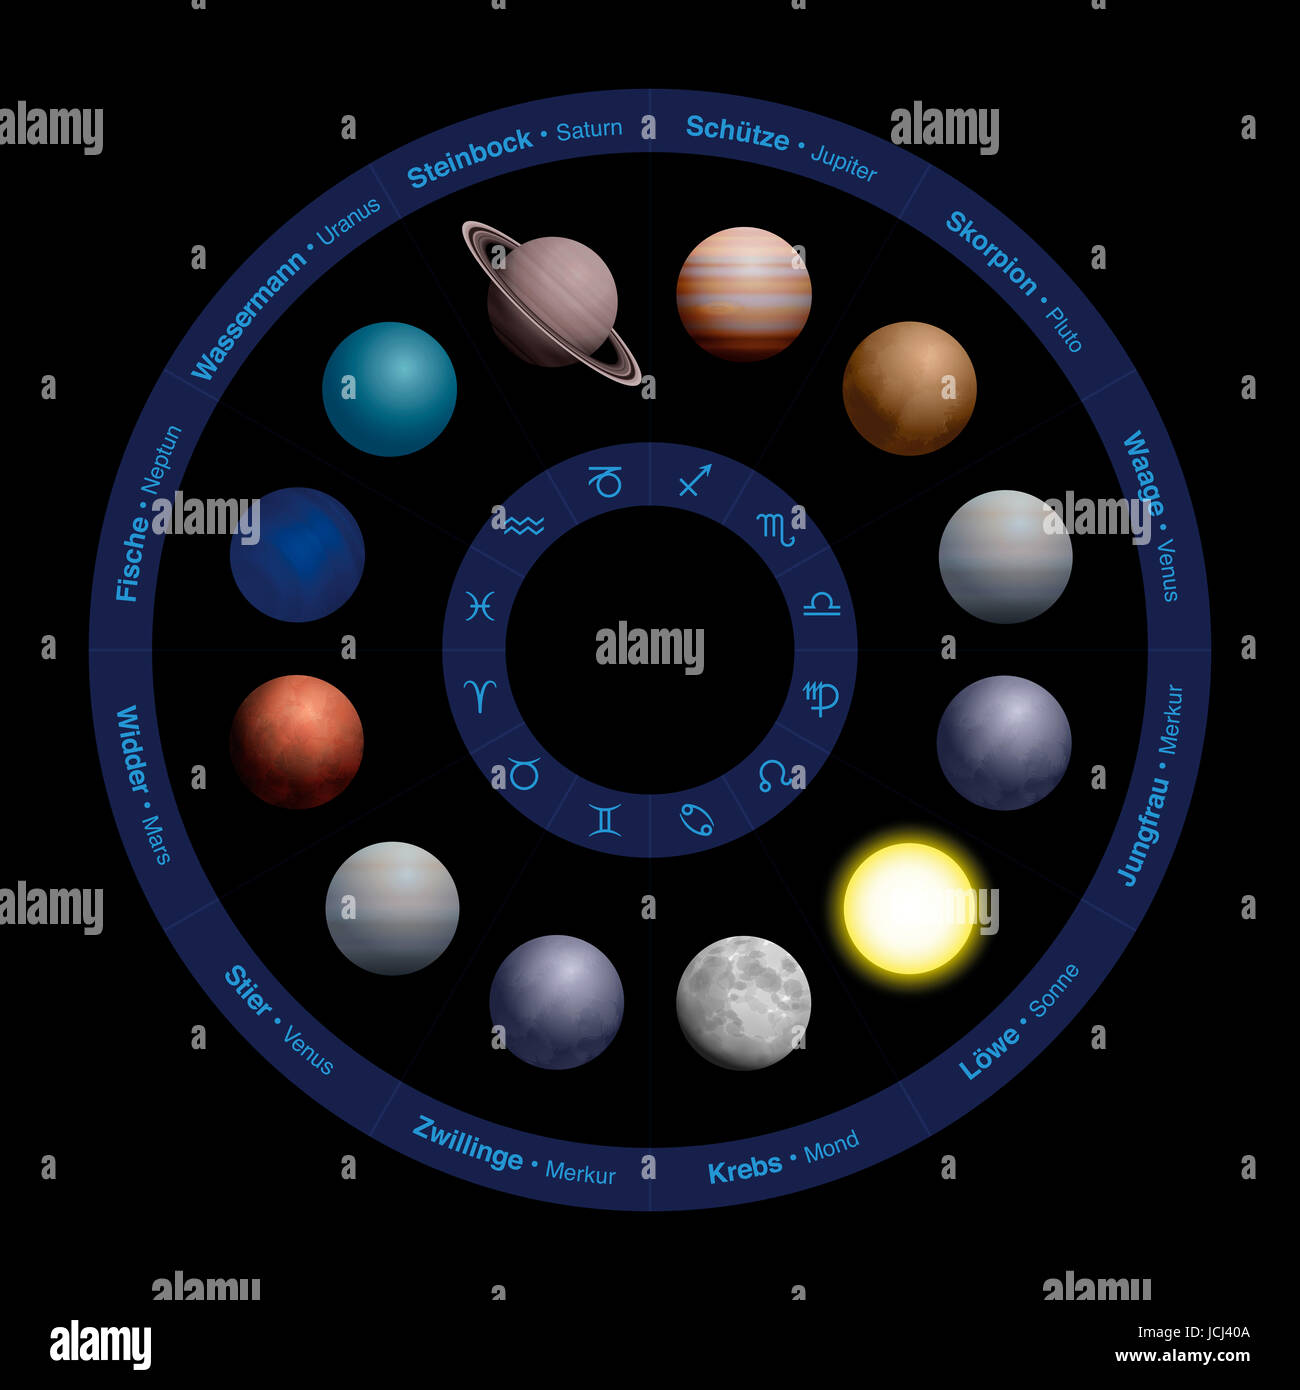 Pianeti di astrologia, design realistico, nel cerchio zodiacale - con i nomi in lingua tedesca nel cerchio esterno e simboli nel cerchio interno. Foto Stock